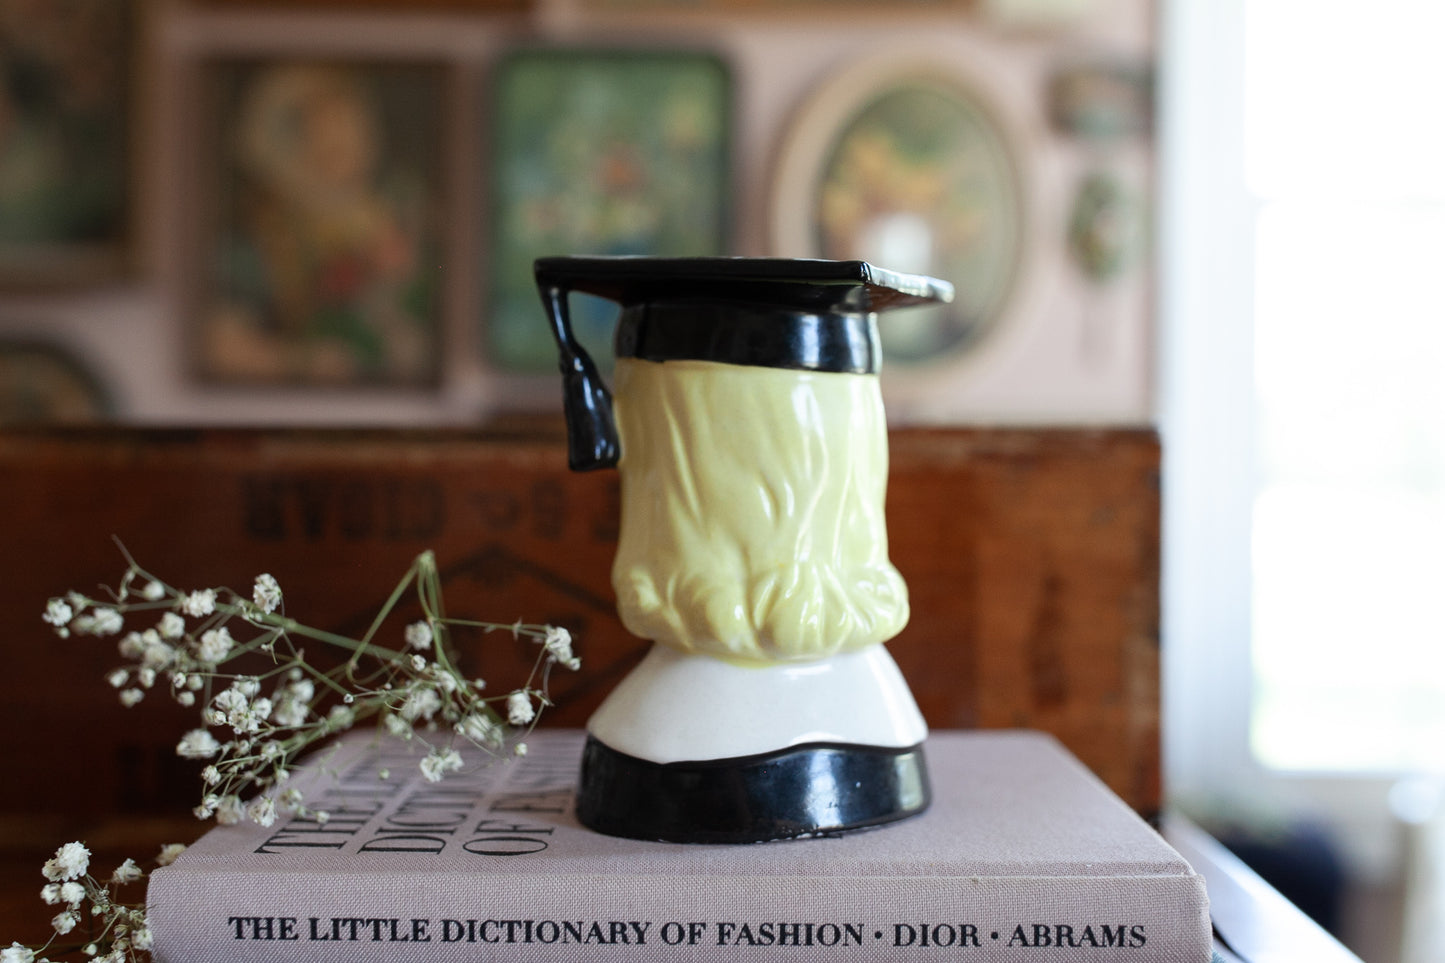 Vintage Lady Head Vase - Graduate - Graduation Gift